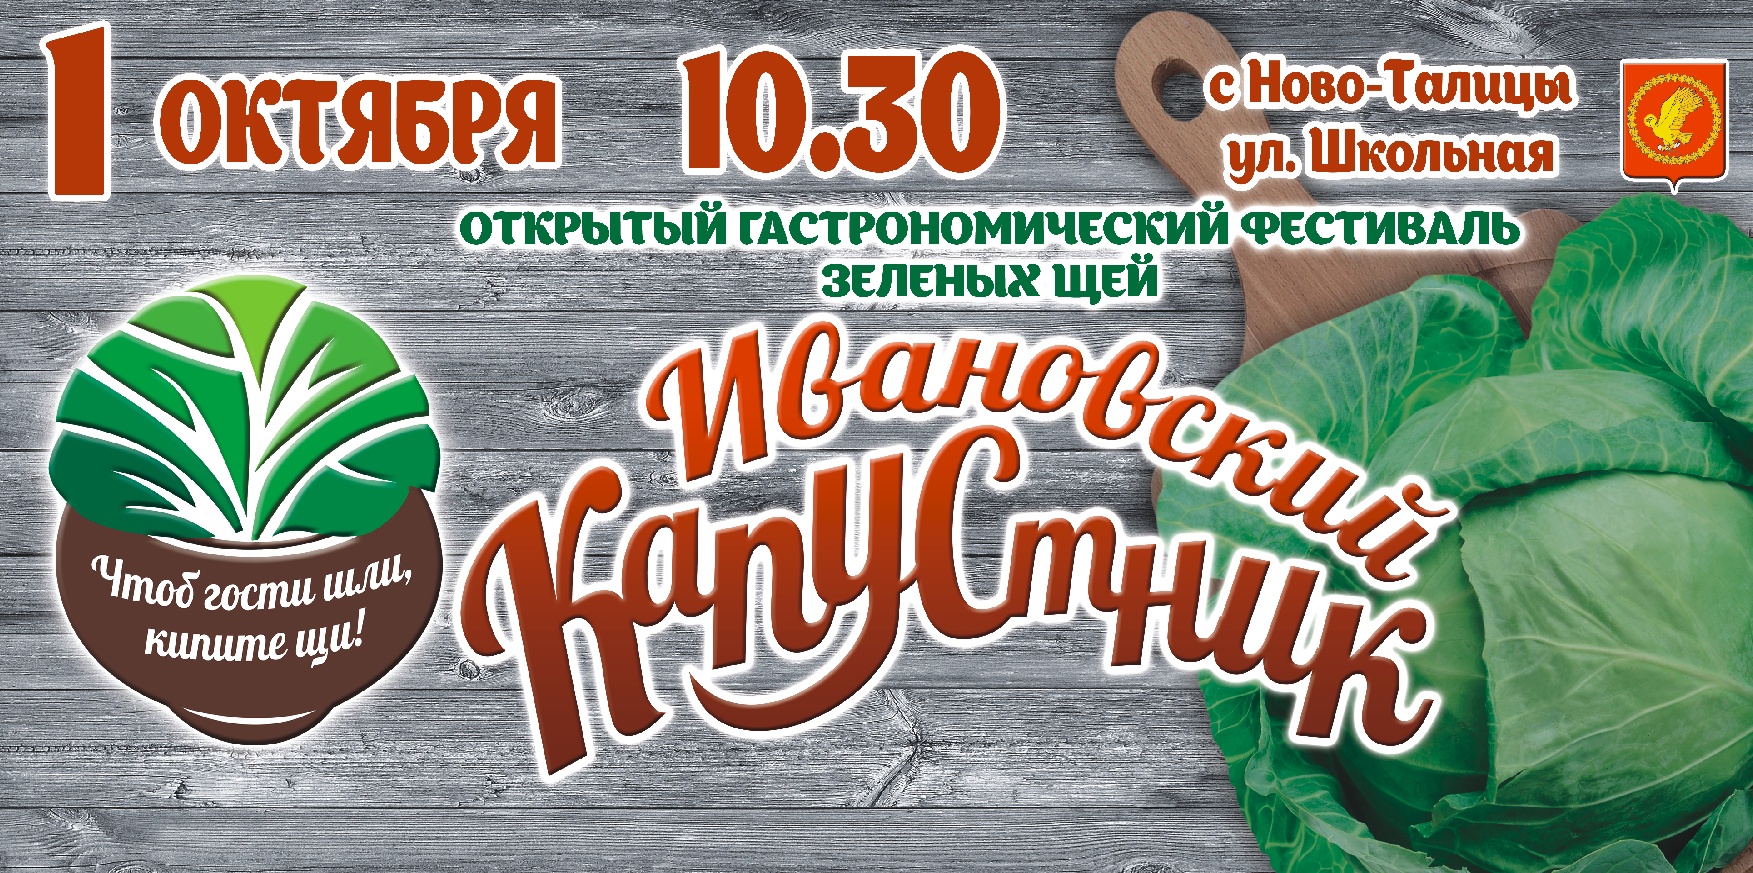 В Ивановской области сварят более 300 литров супа по 30 различным рецептам 